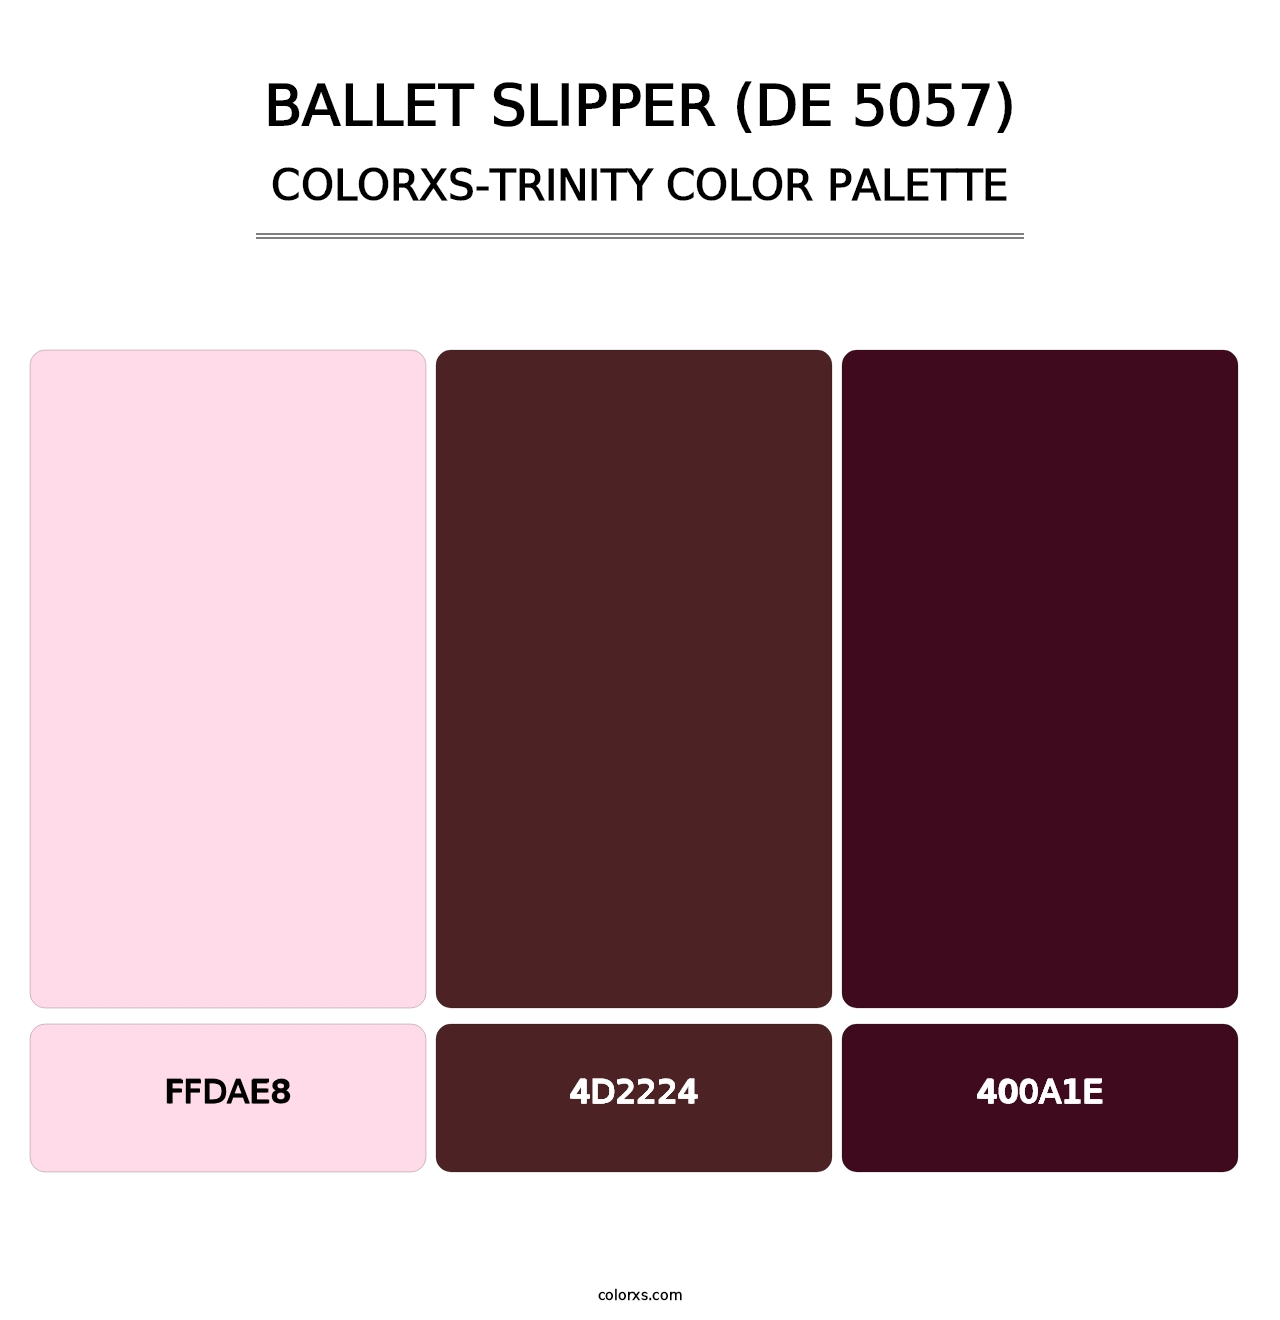 Ballet Slipper (DE 5057) - Colorxs Trinity Palette